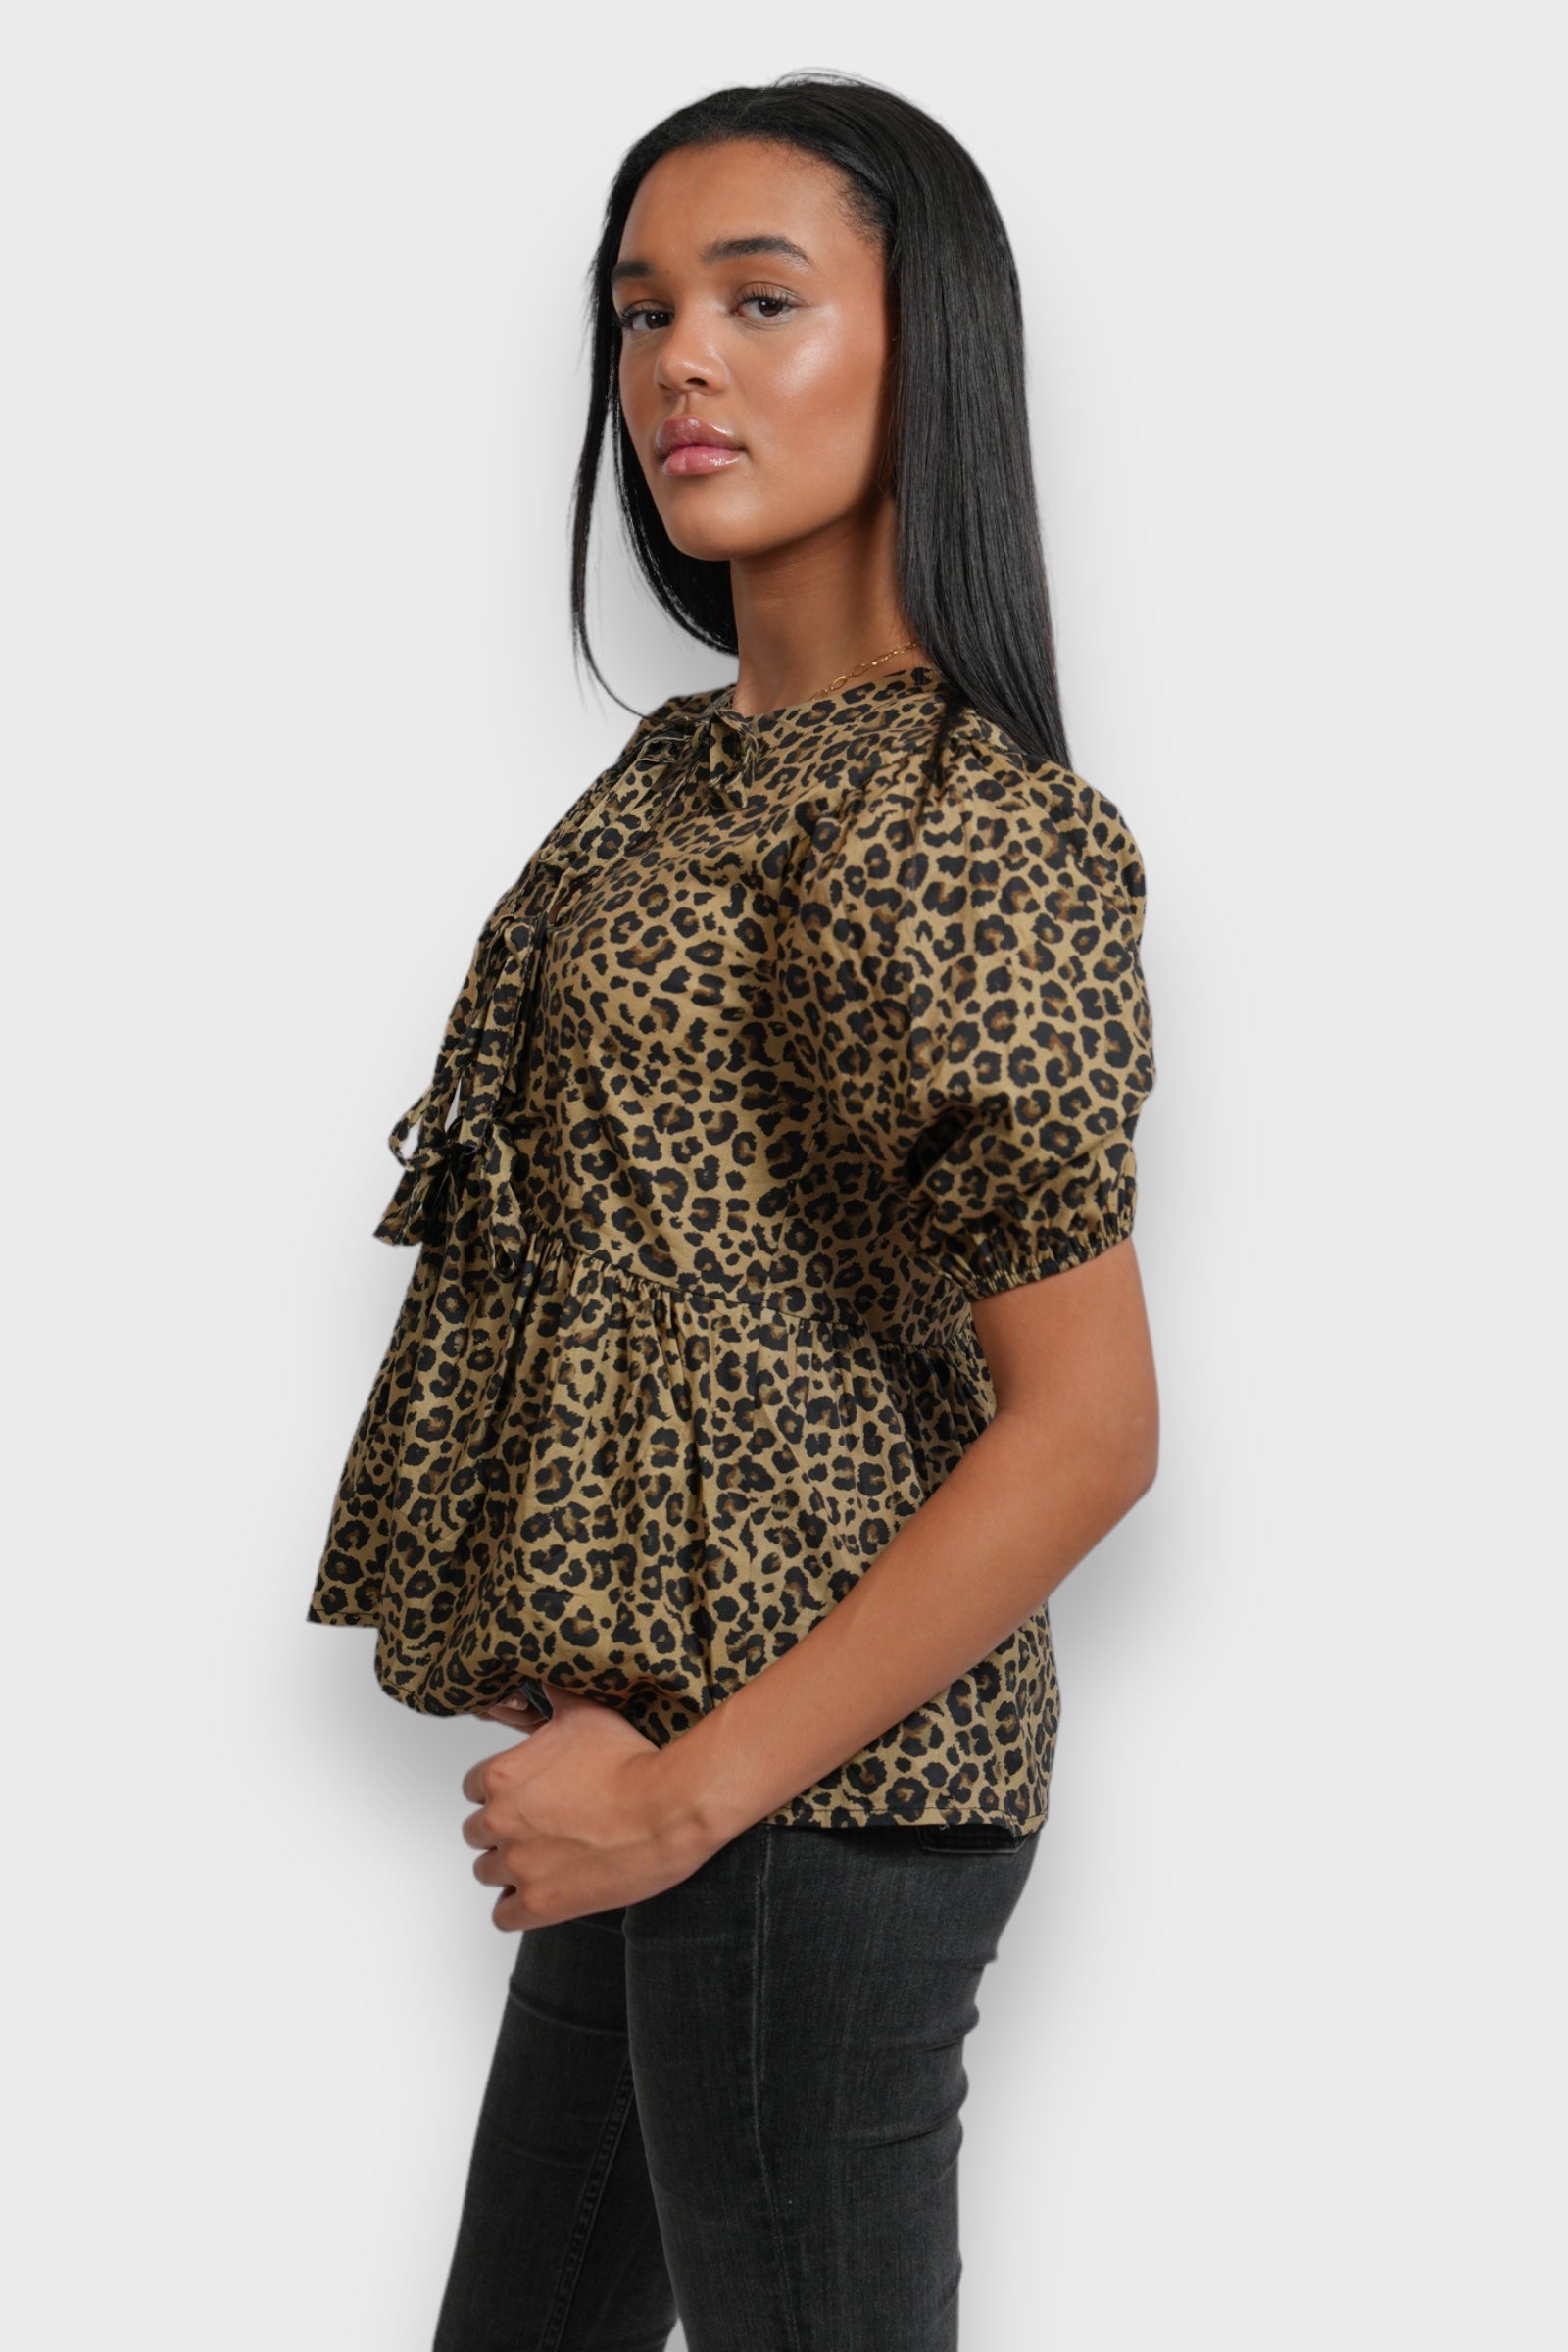 "Leopard" blouse